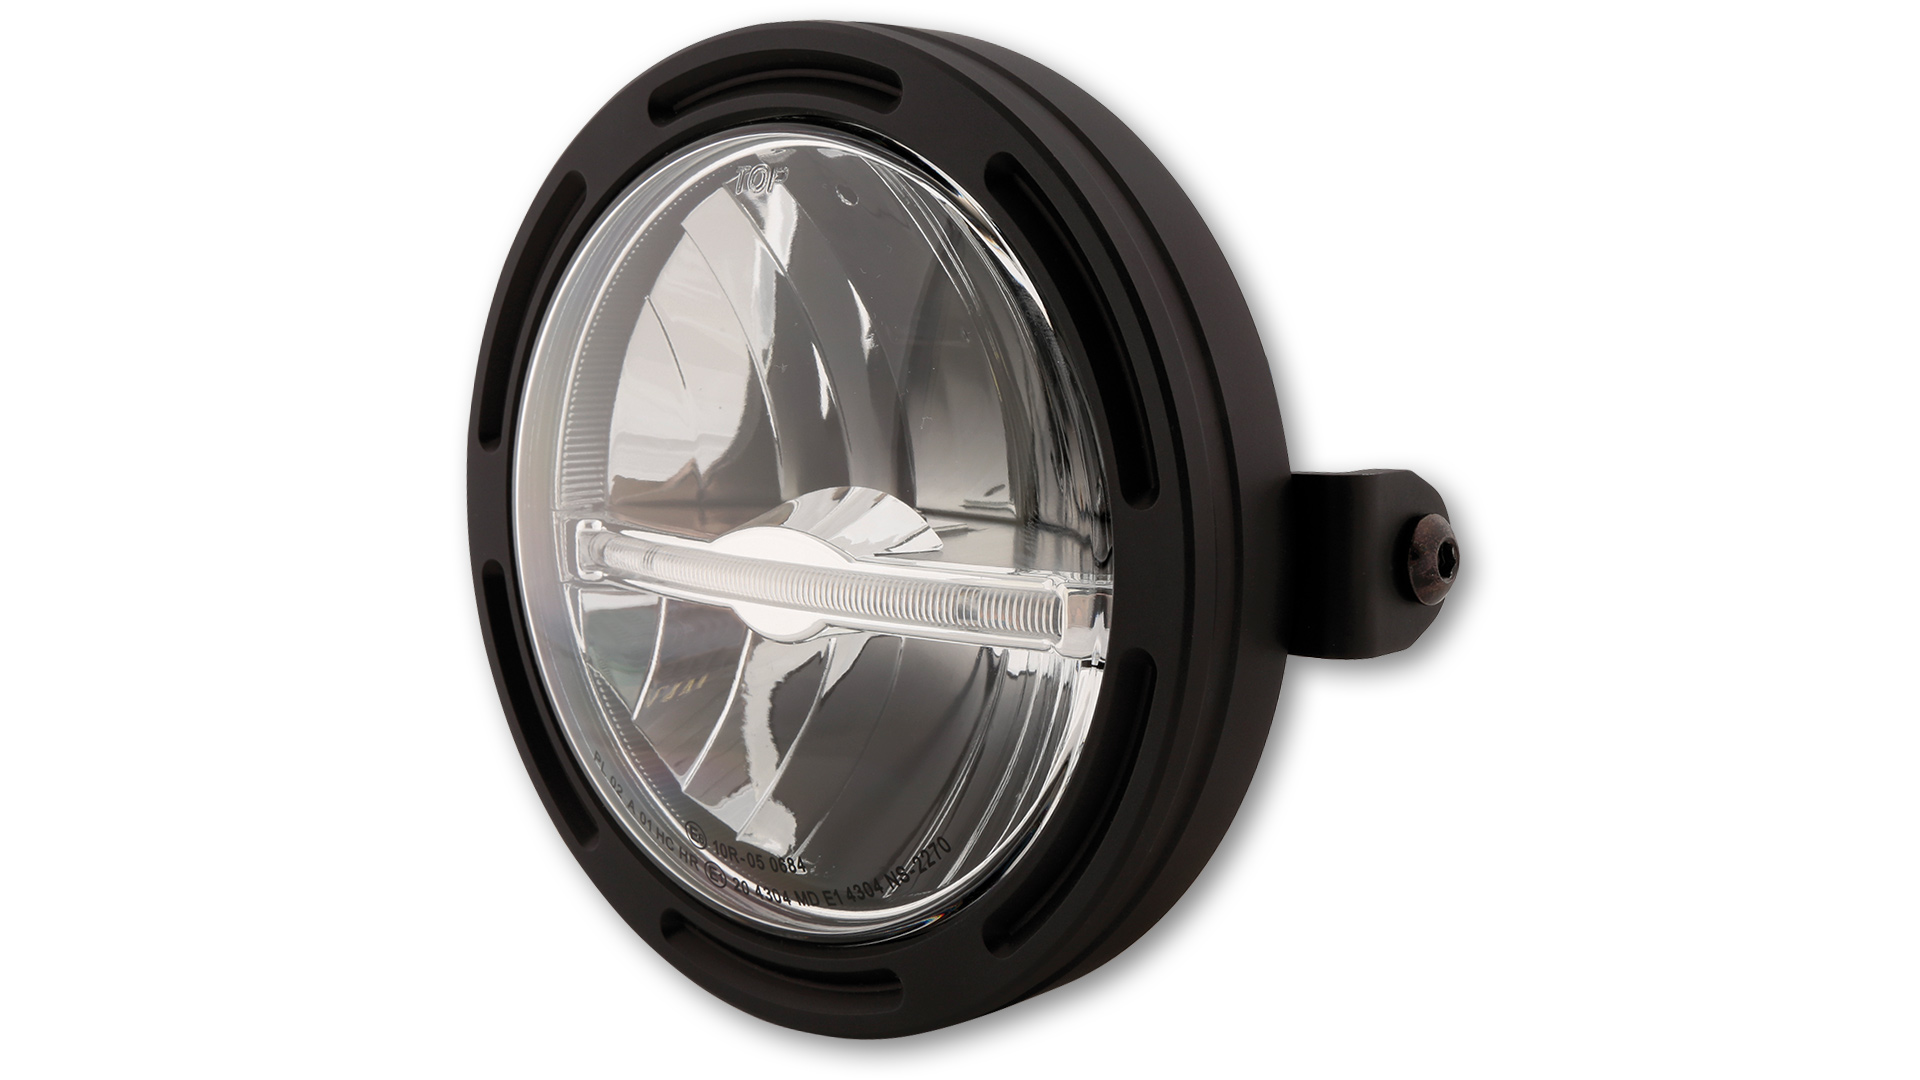 5 3/4 pulgadas Faro principal LED FRAME-R2 JACKSON con barra de luz de estacionamiento (Light guide system), redondo, negro. Disponible con montaje lateral o inferior, E-approved.